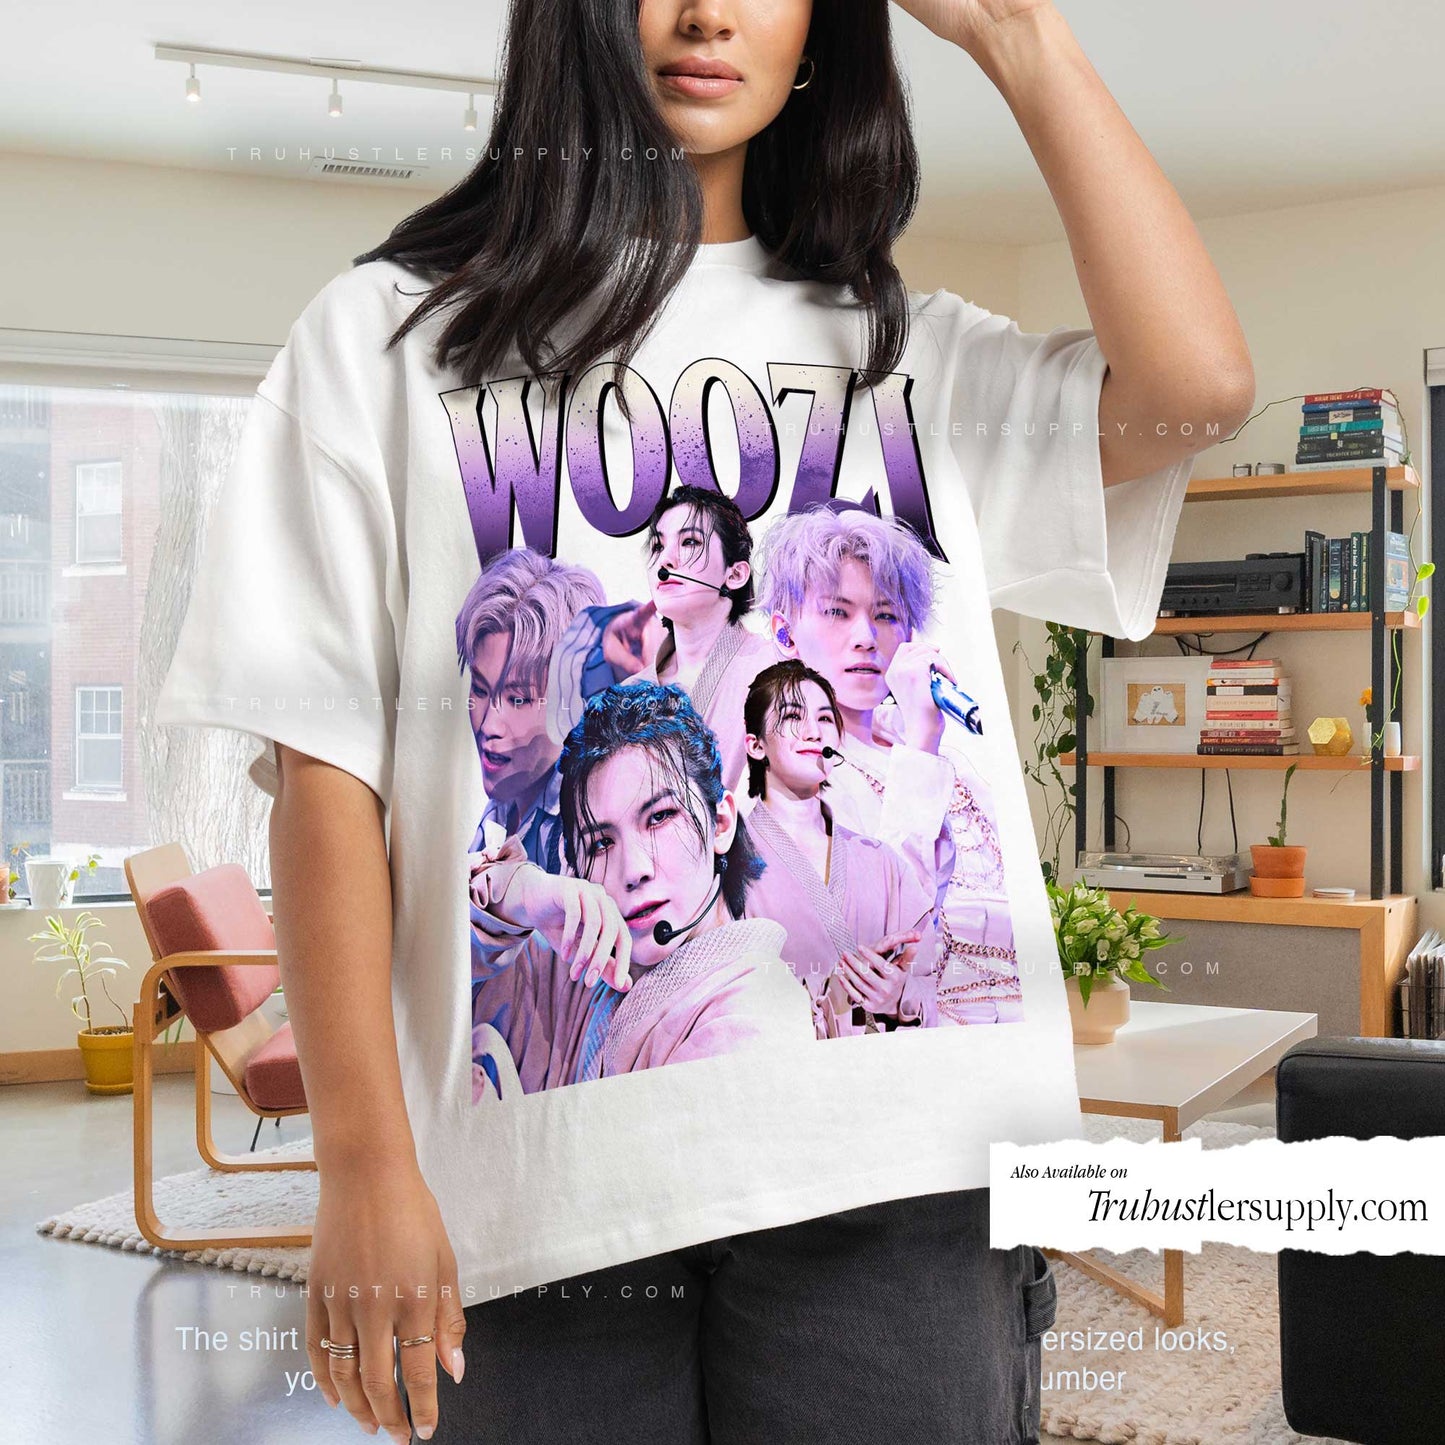 Woozi Seventeen Bootleg Graphic T Shirt